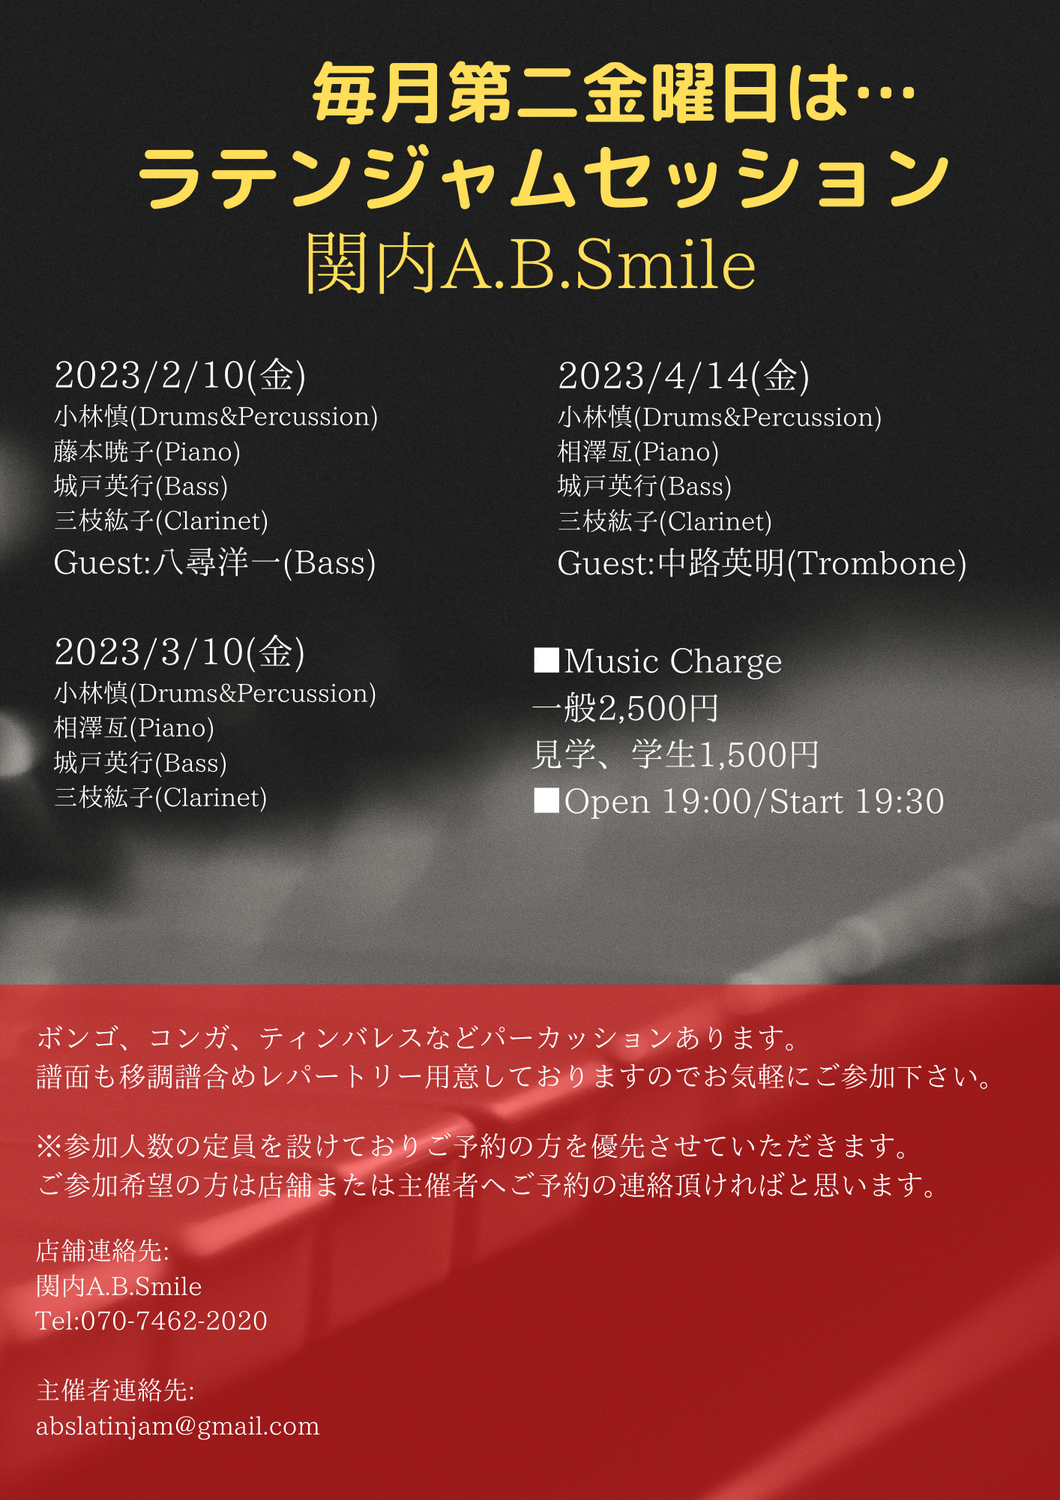 2023/3/10(金)「Latin Jam Session」 @ 関内A.B.Smile